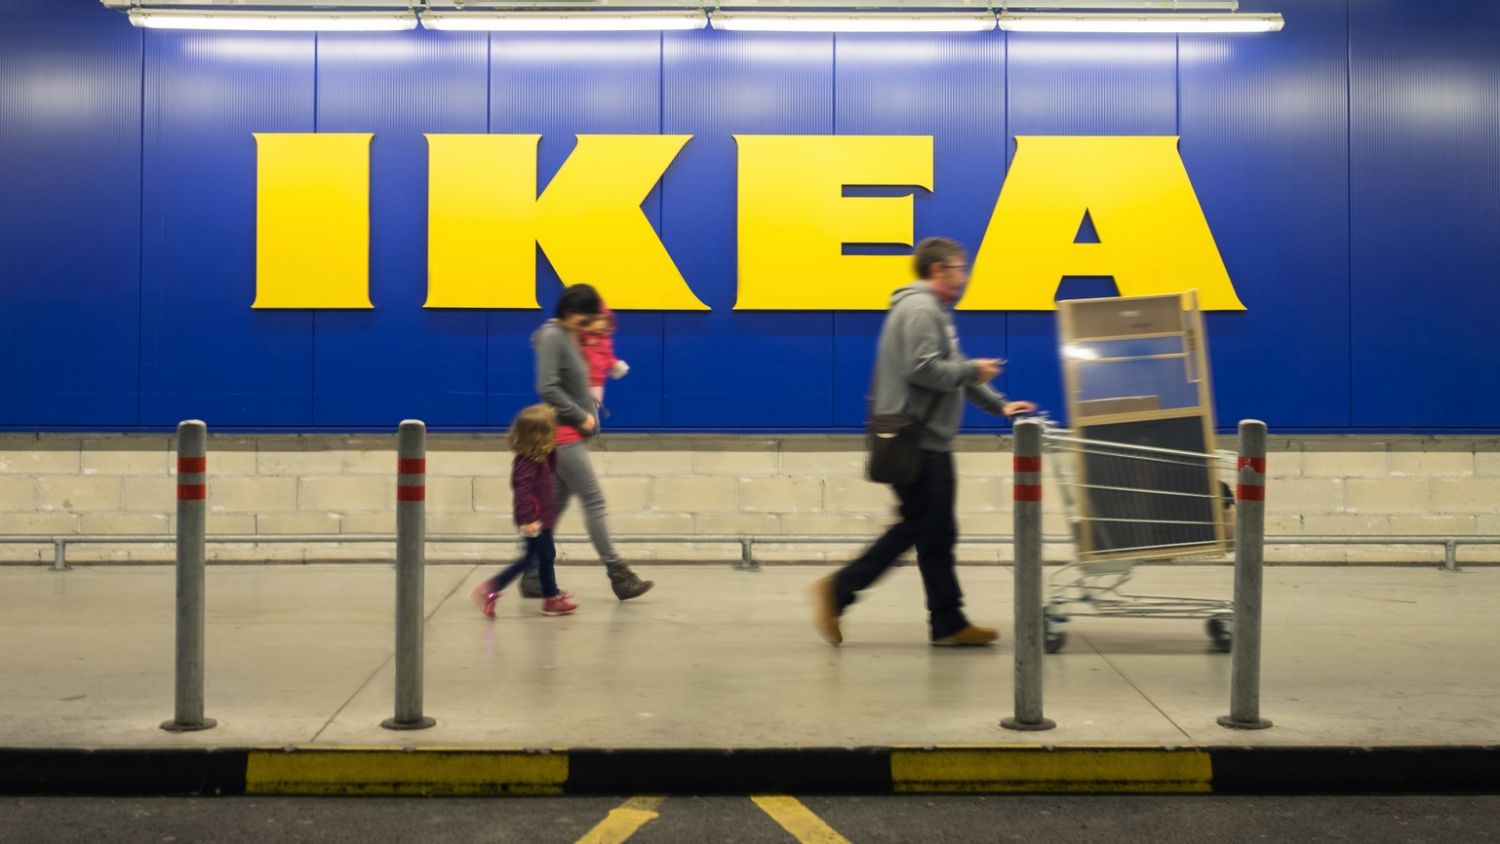 5 хитростей, которые сделали Ikea успешной. Примените их в своем бизнесе